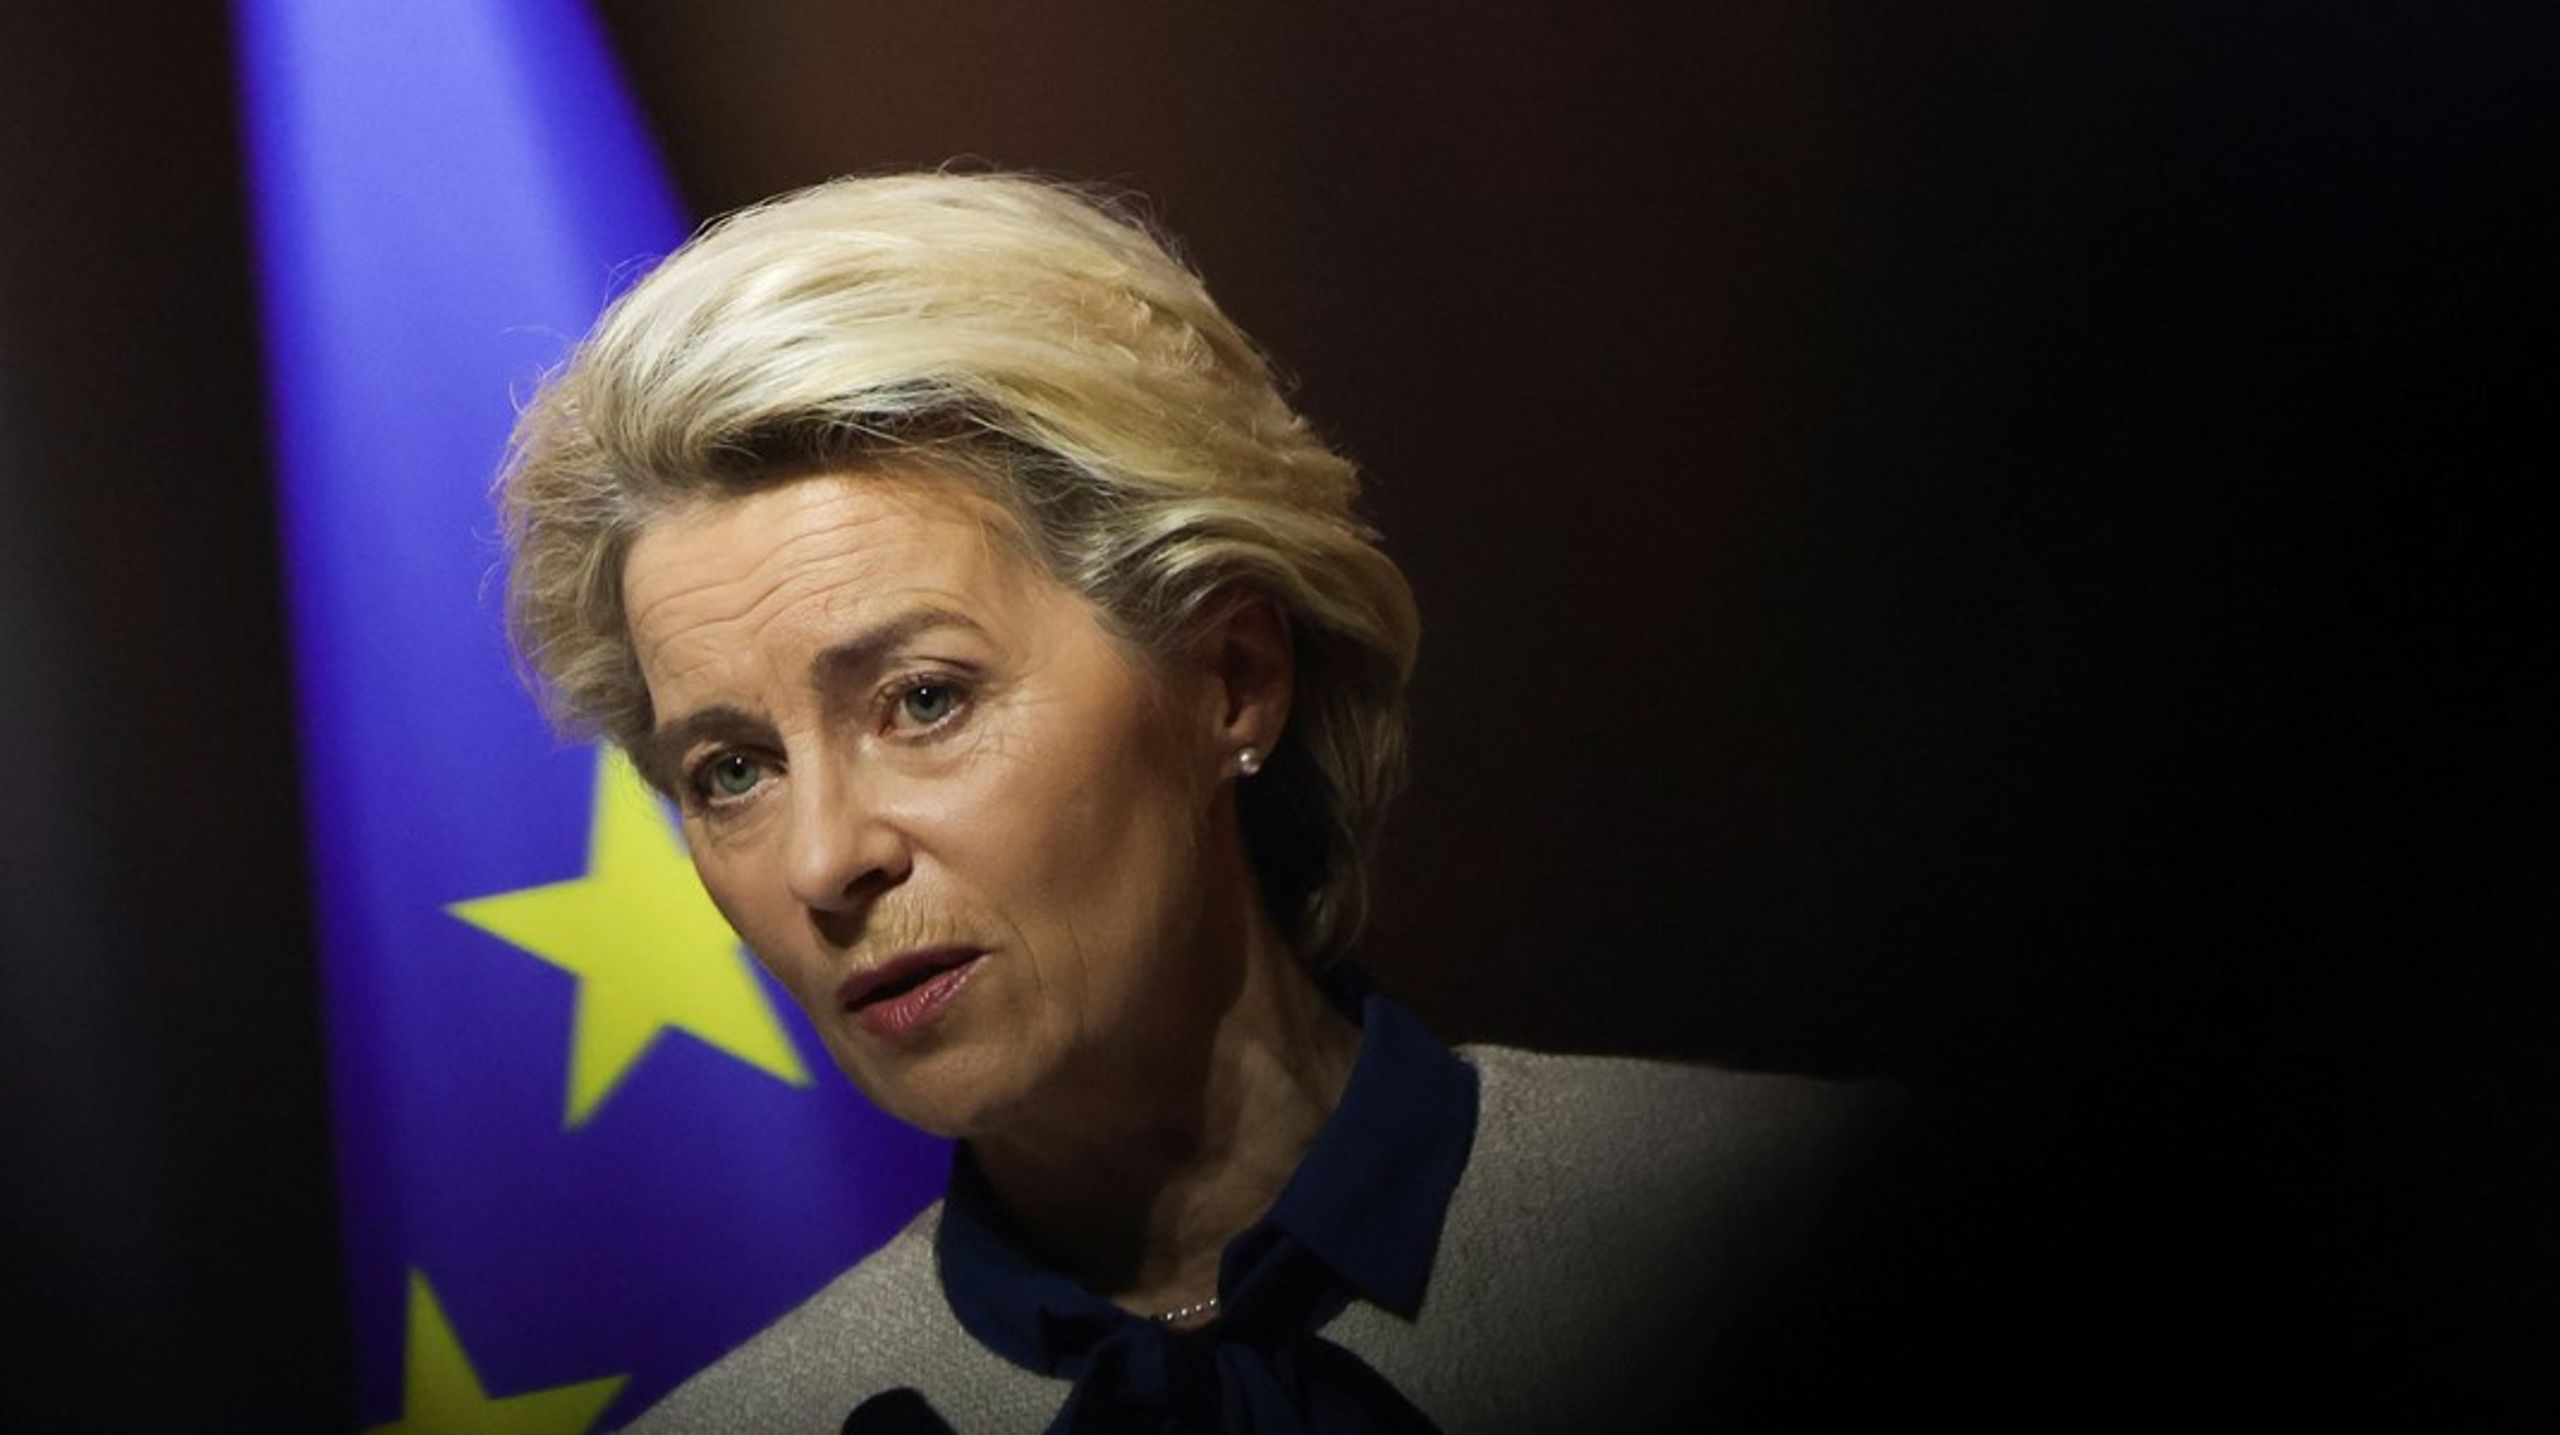 Da EU’s ledere på det uformelle rådsmøde på Versailles erklærede den fornødne fælles forsvarsvilje, opfordrede de samtidig kommissionen til inden maj at fremlægge en samlet plan for, hvordan EU i et langt hurtigere tempo kan frigøre sig fra importerede fossile brændsler, skriver Martin Lidegaard (R).